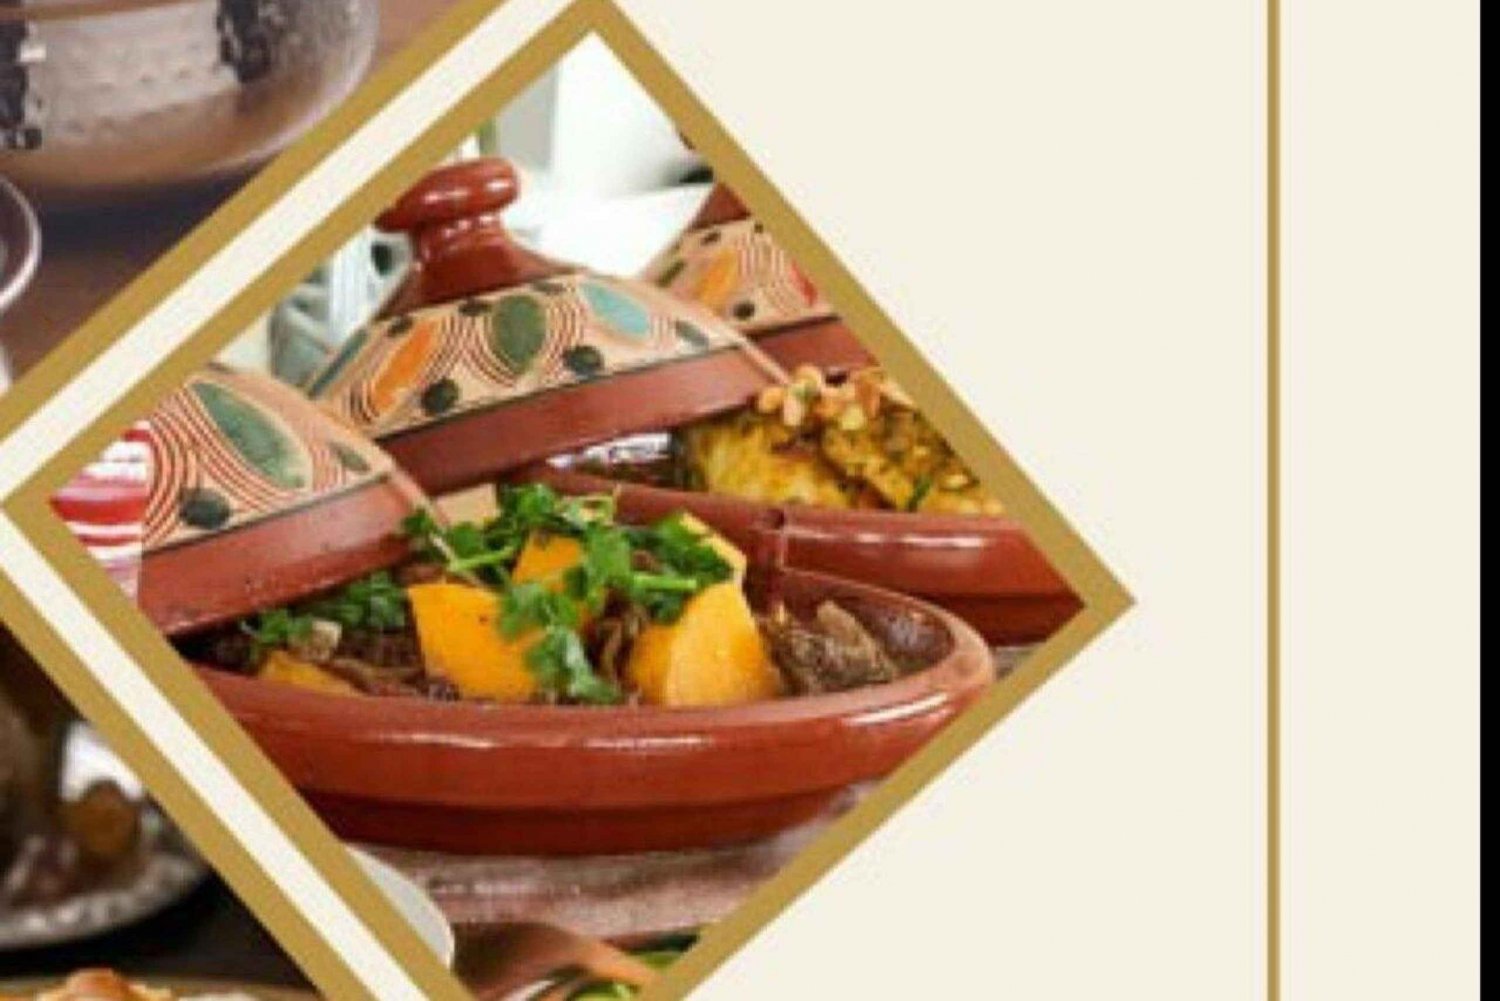 Las Américas, Tenerife: Cocina tradicional marroquí